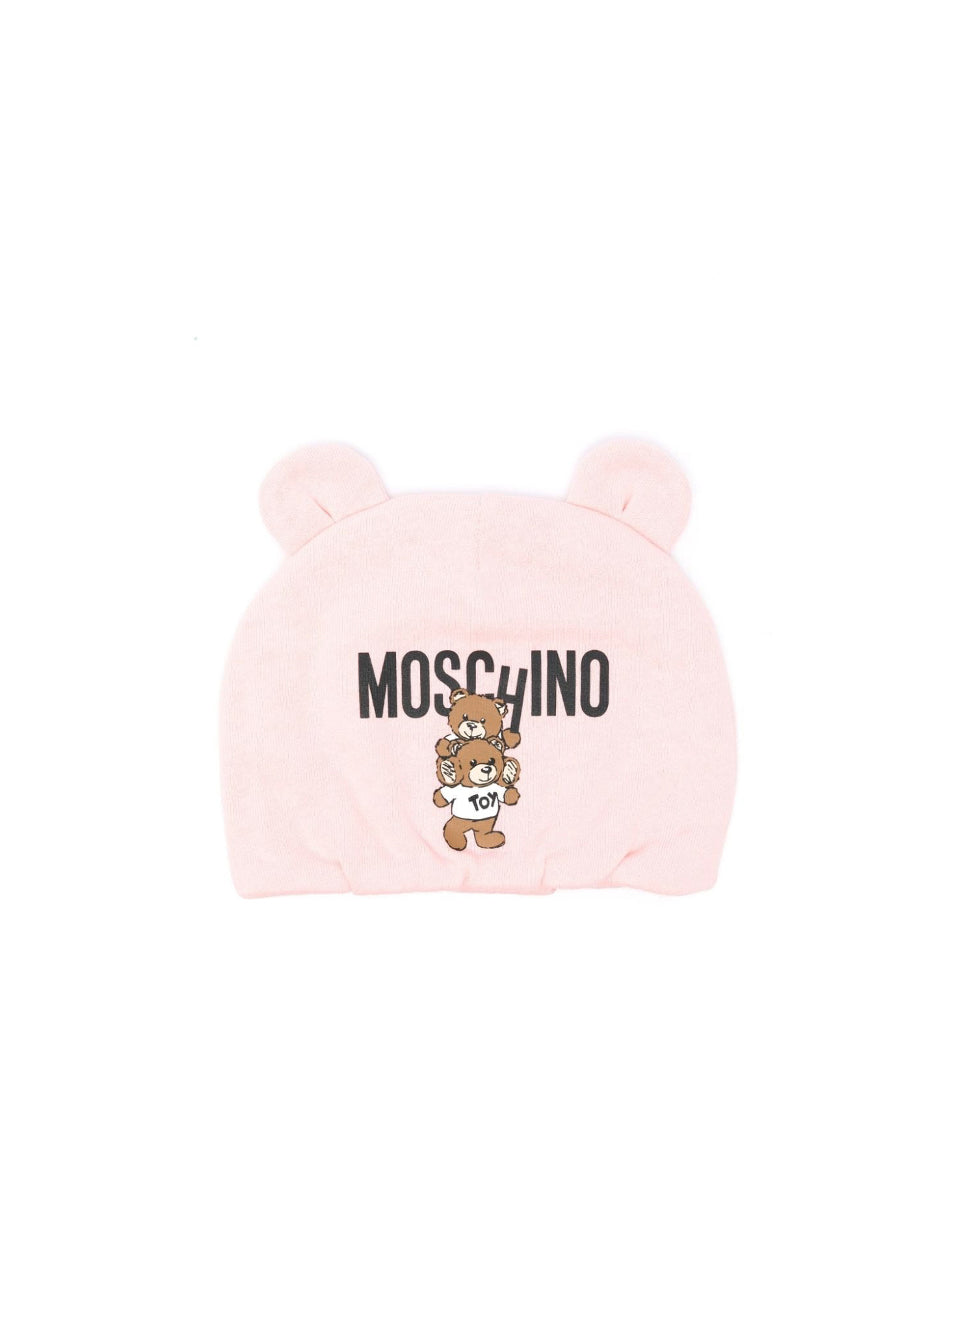 Moschino Kids Cappellino Rosa con Stampa Logo Teddy Bear per Neonate